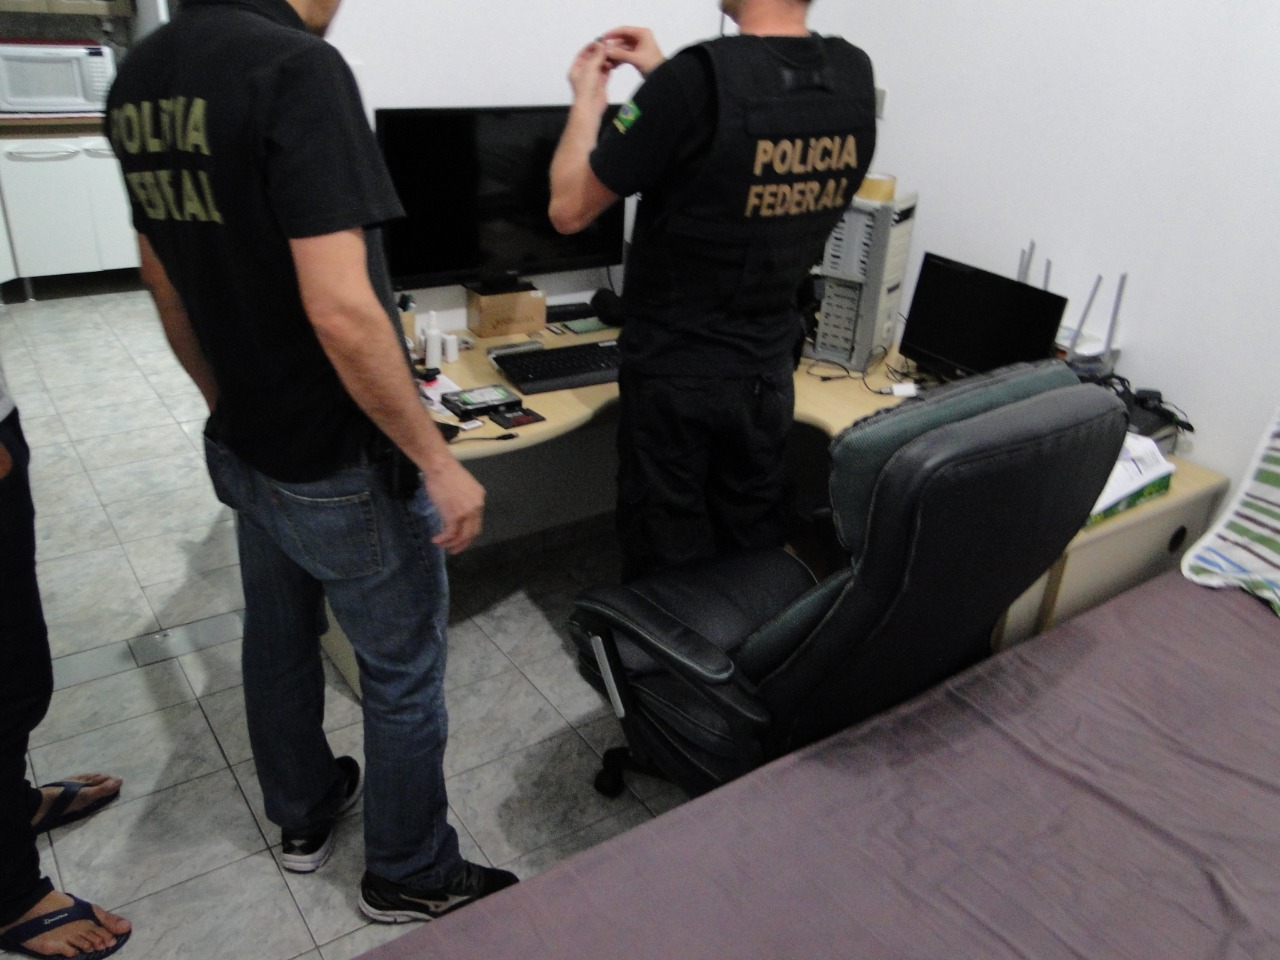  Homem suspeito de pedofilia é preso pela Polícia Federal, em Pinhais